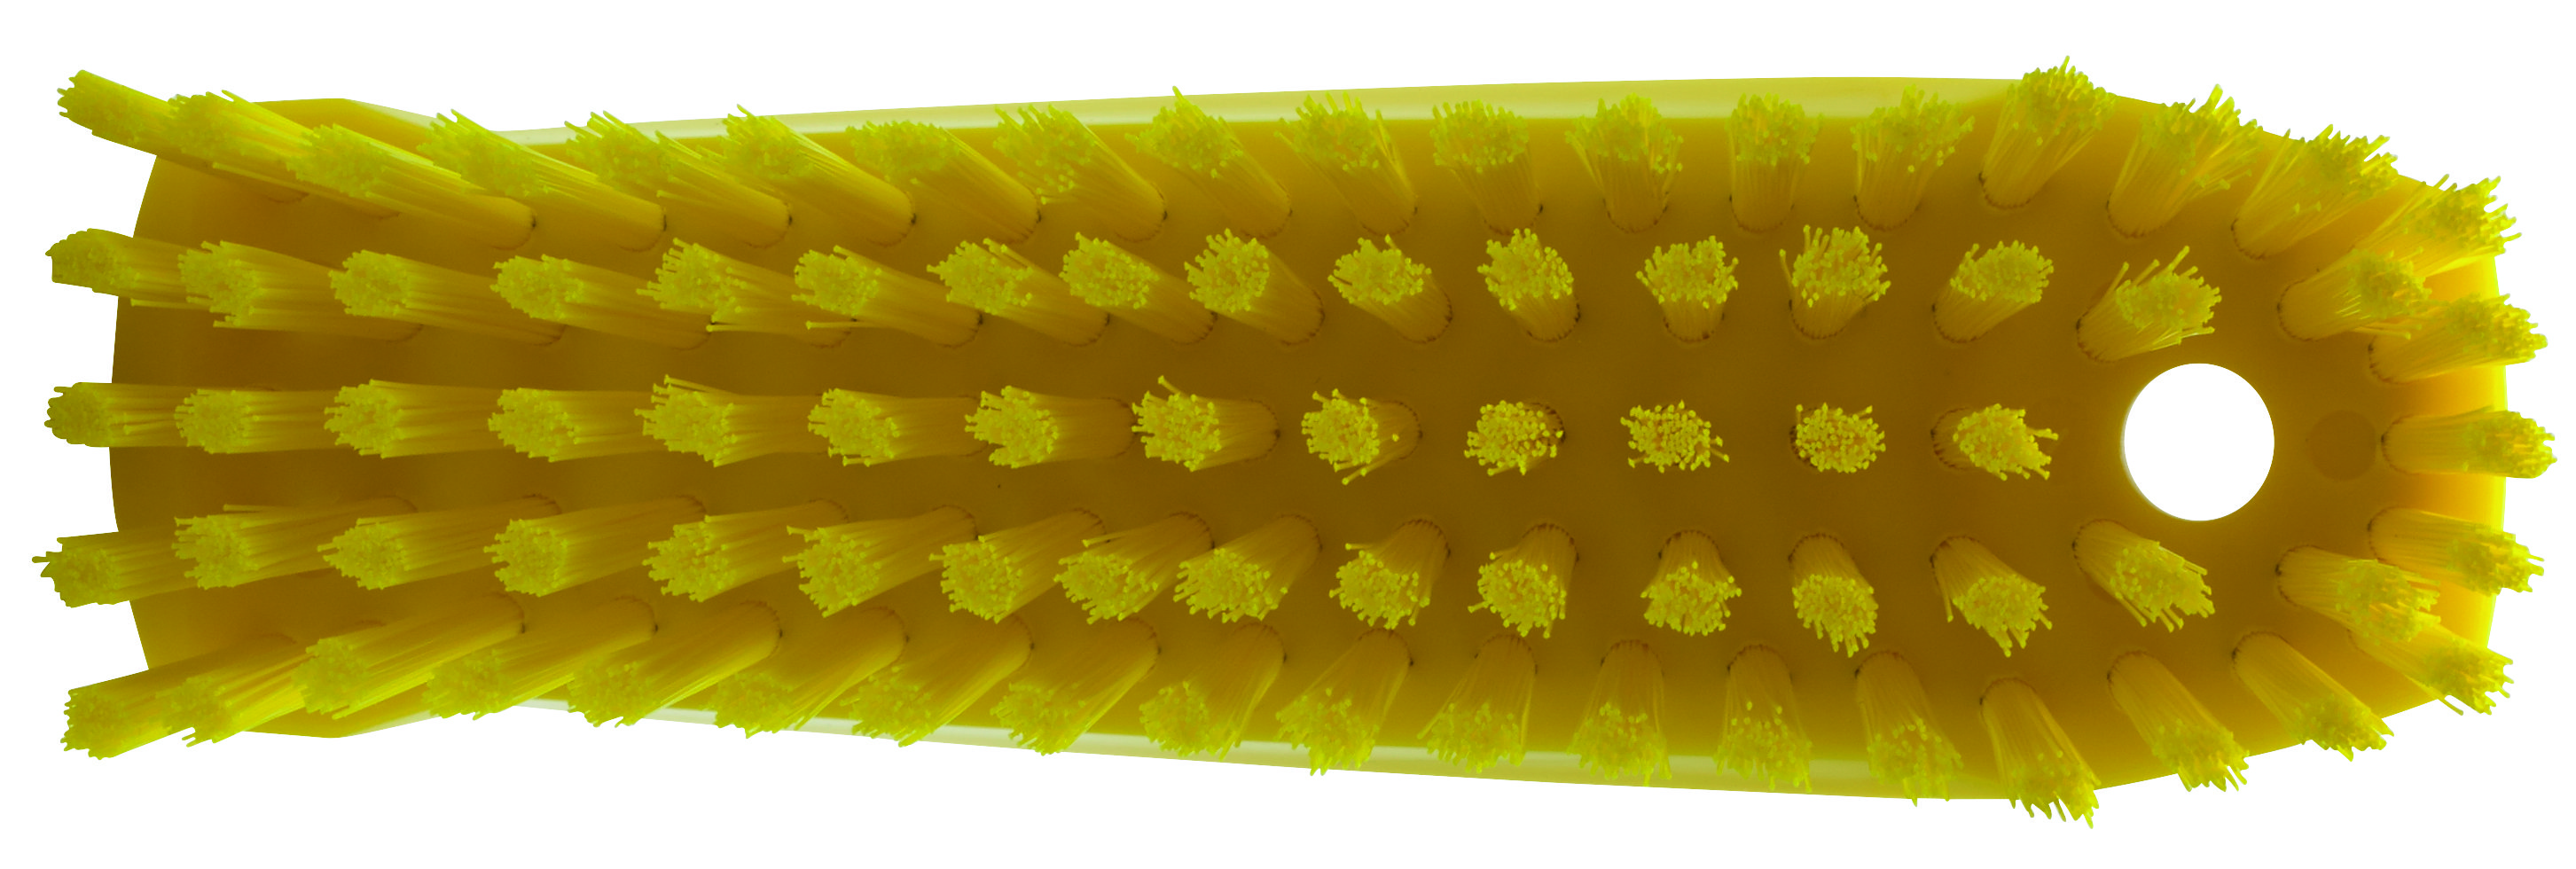 Щетка Vikan ручная скребковая средней жесткости, 165 мм, желтая